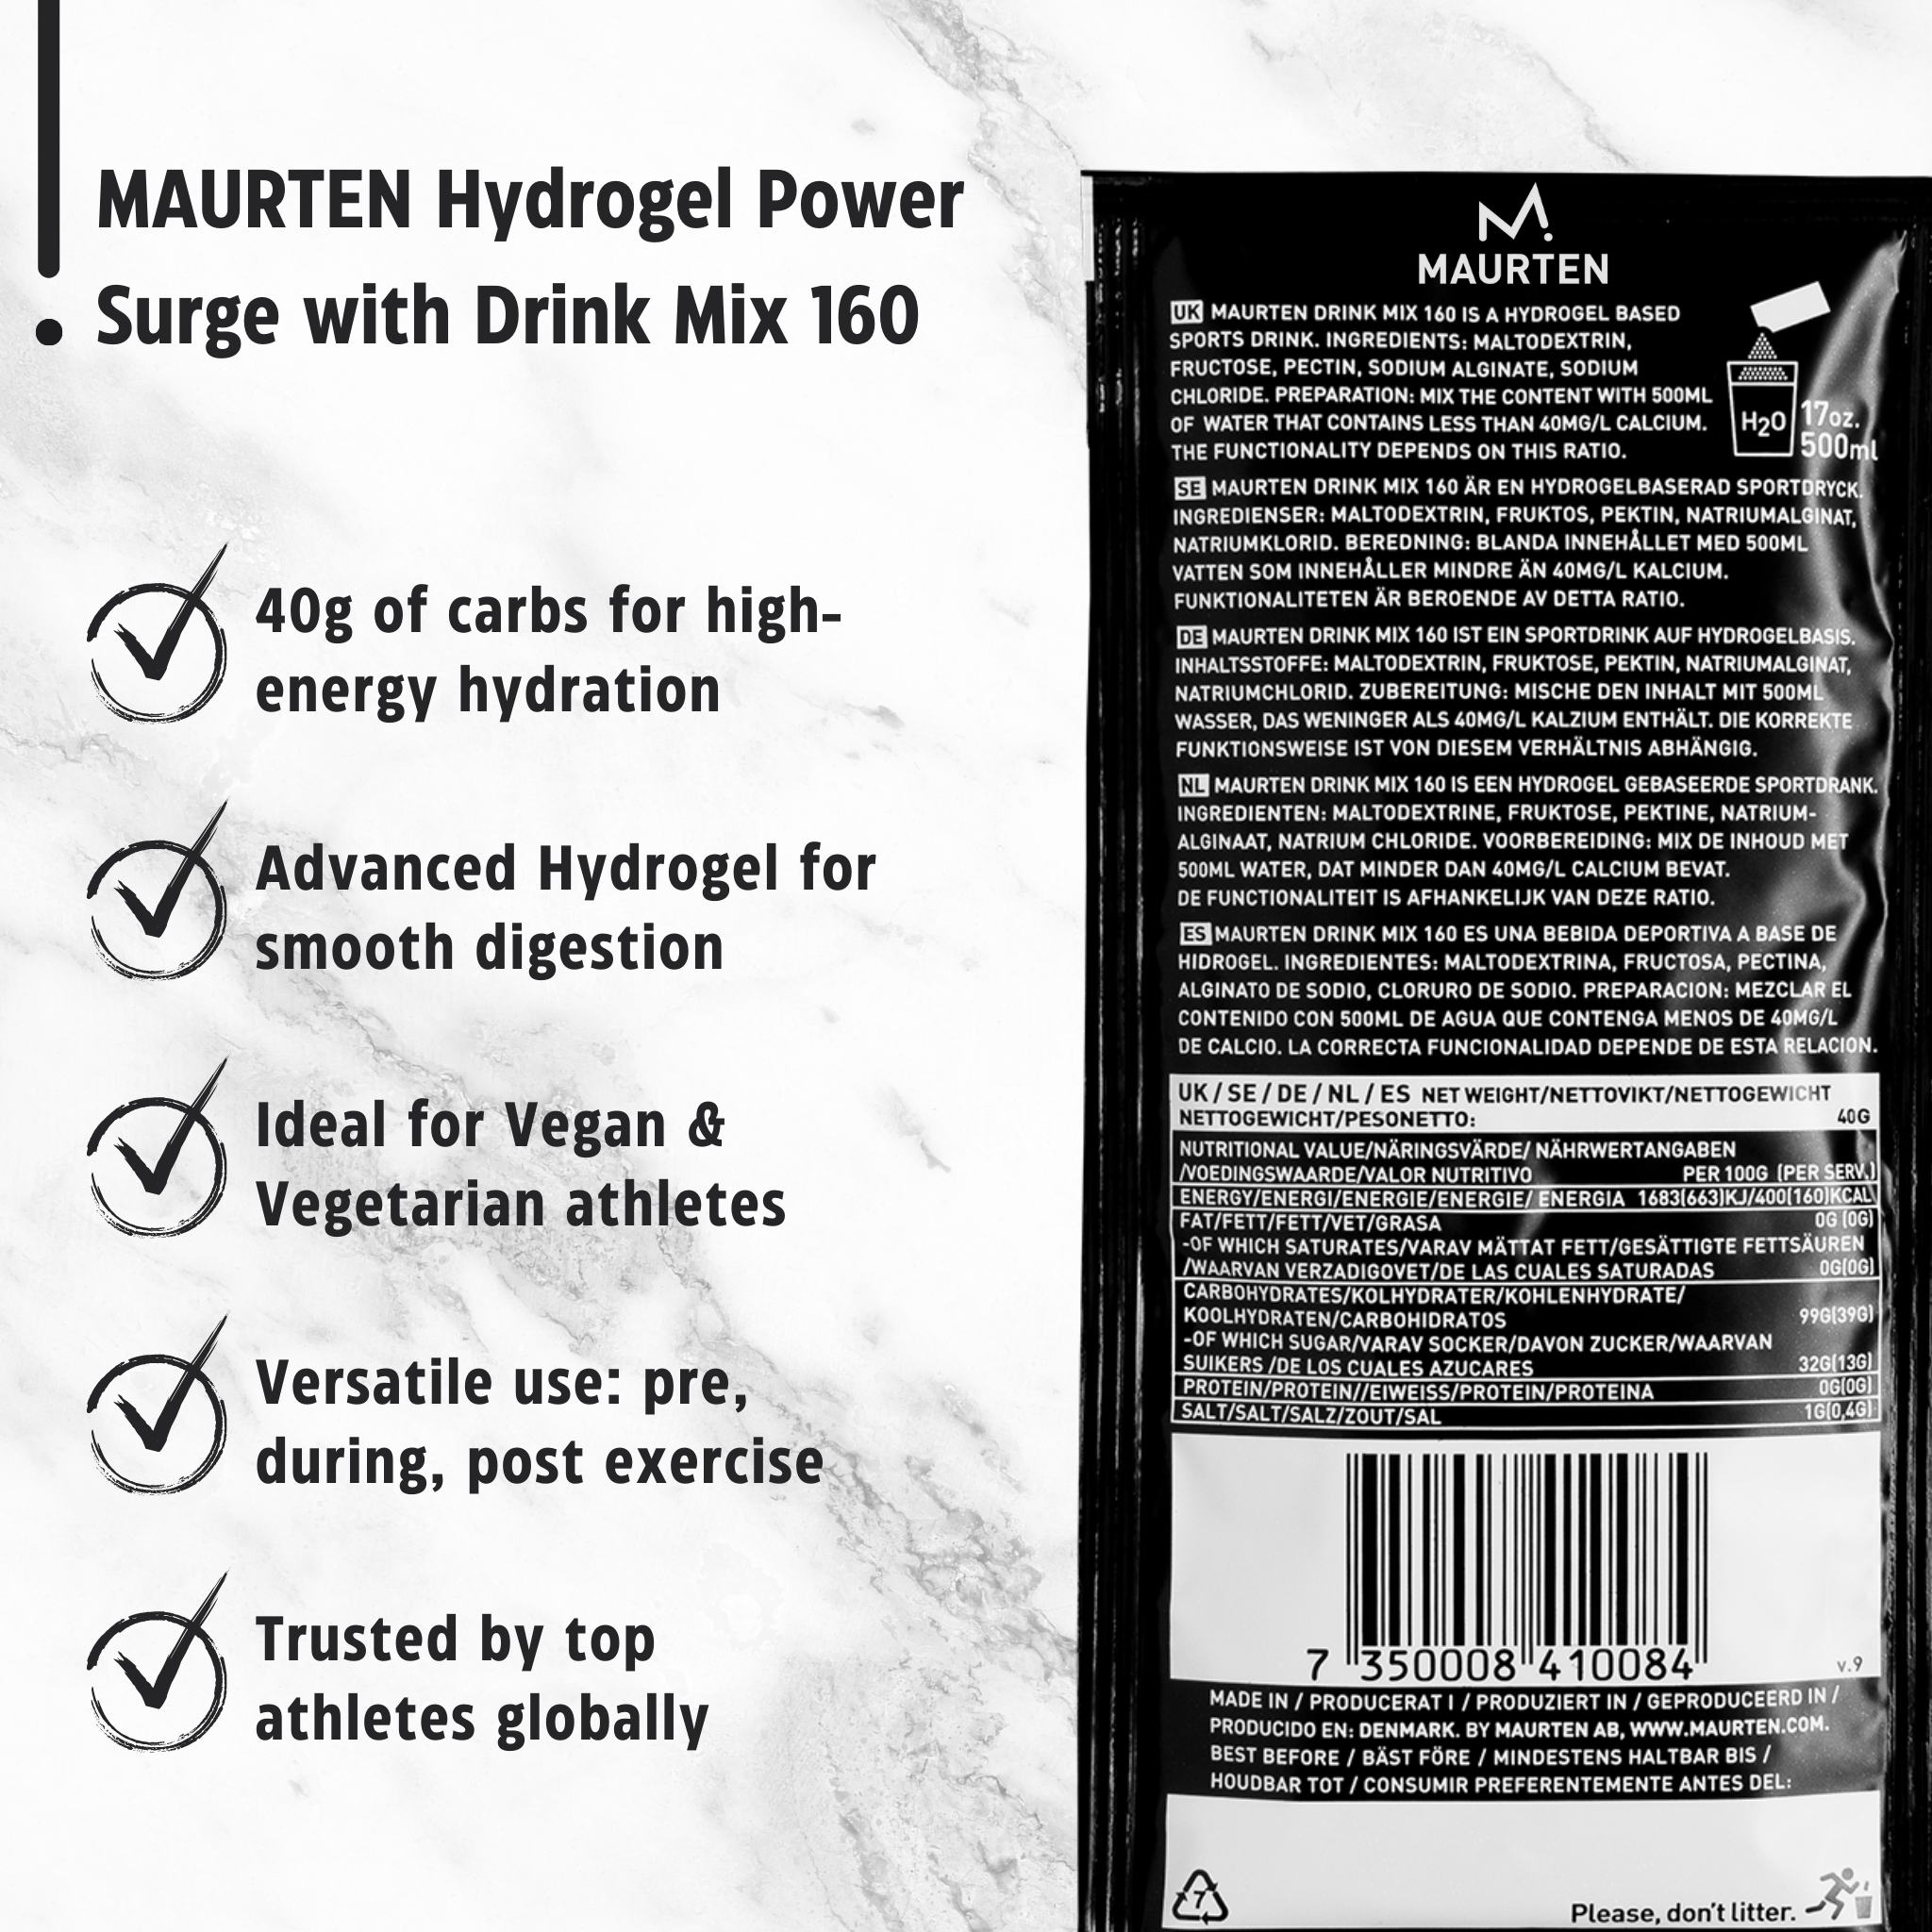 Maurten Energidrik Drink Mix 160 (40g)